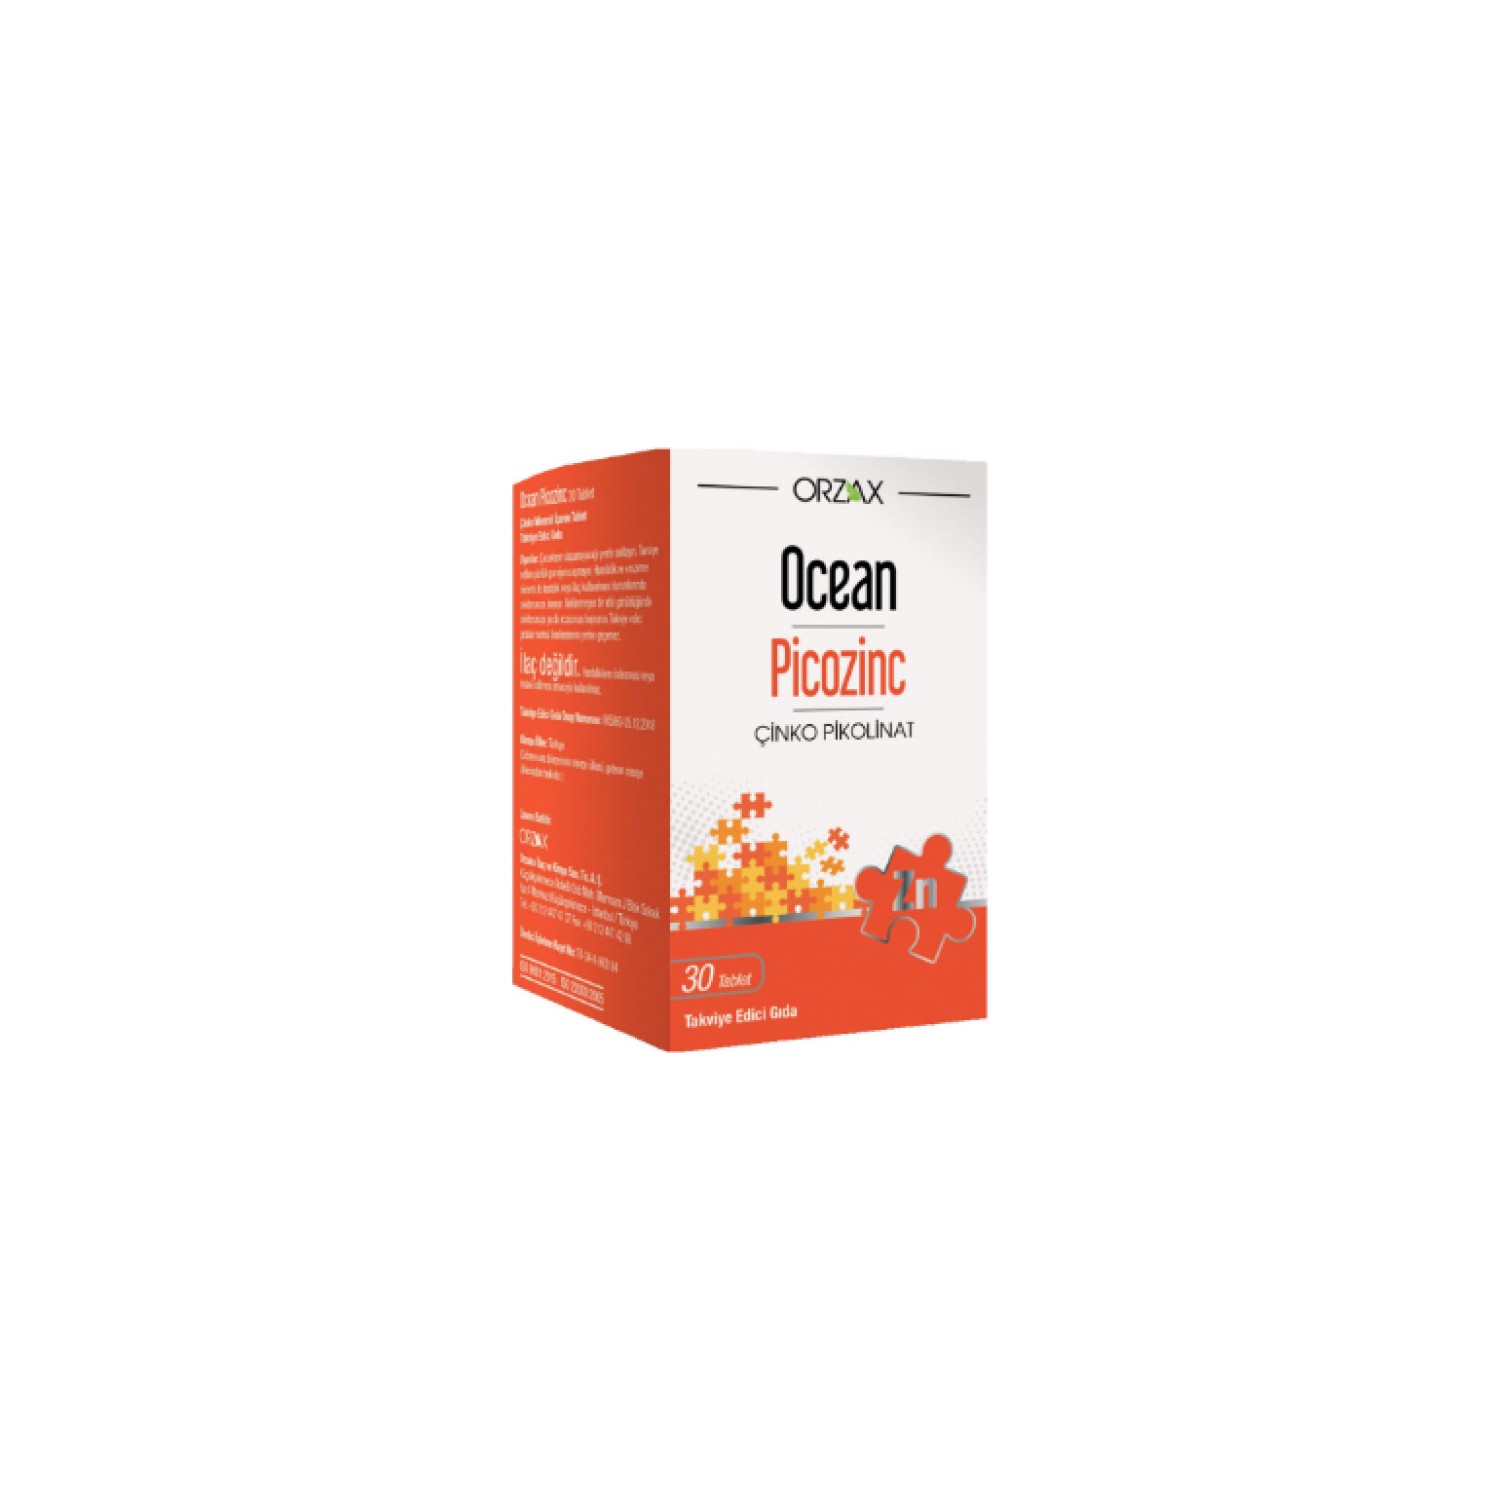 Пищевая добавка Orzax Cinco Picolinate, 30 таблеток пищевая добавка orzax ocean picozinc cinko picolinate 2 упаковки по 30 таблеток